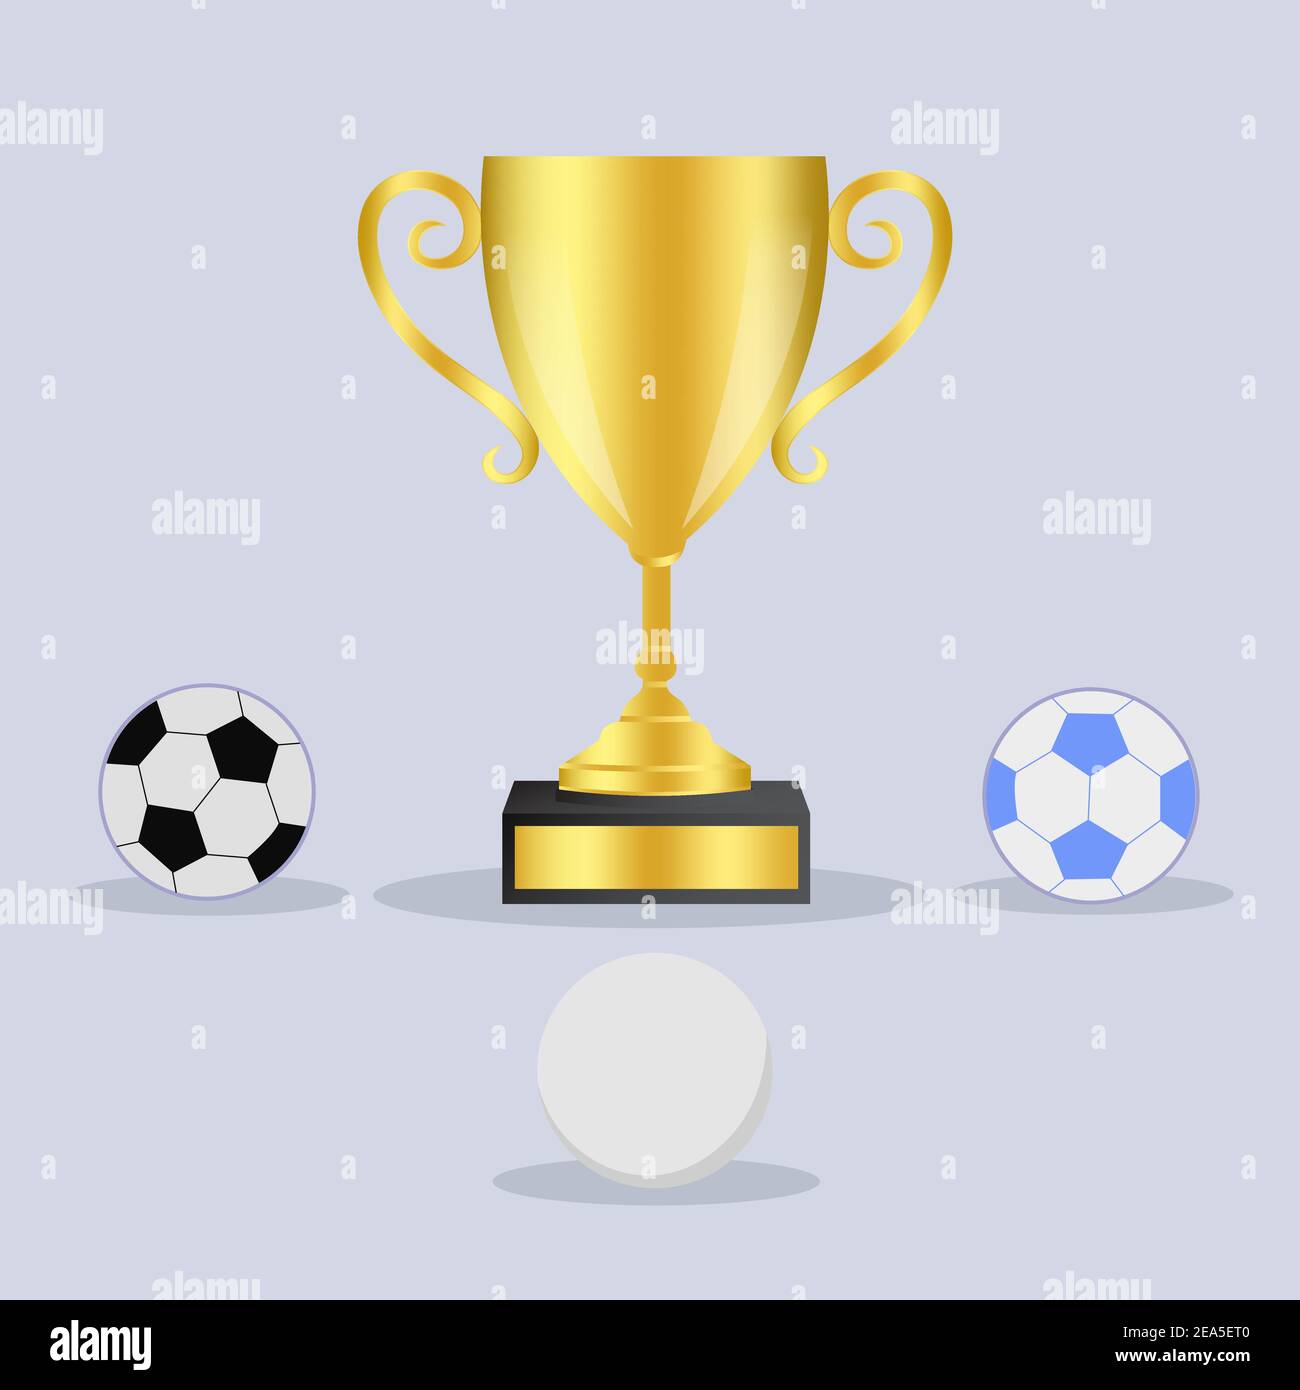 Golden trophy with balls Stock Vector